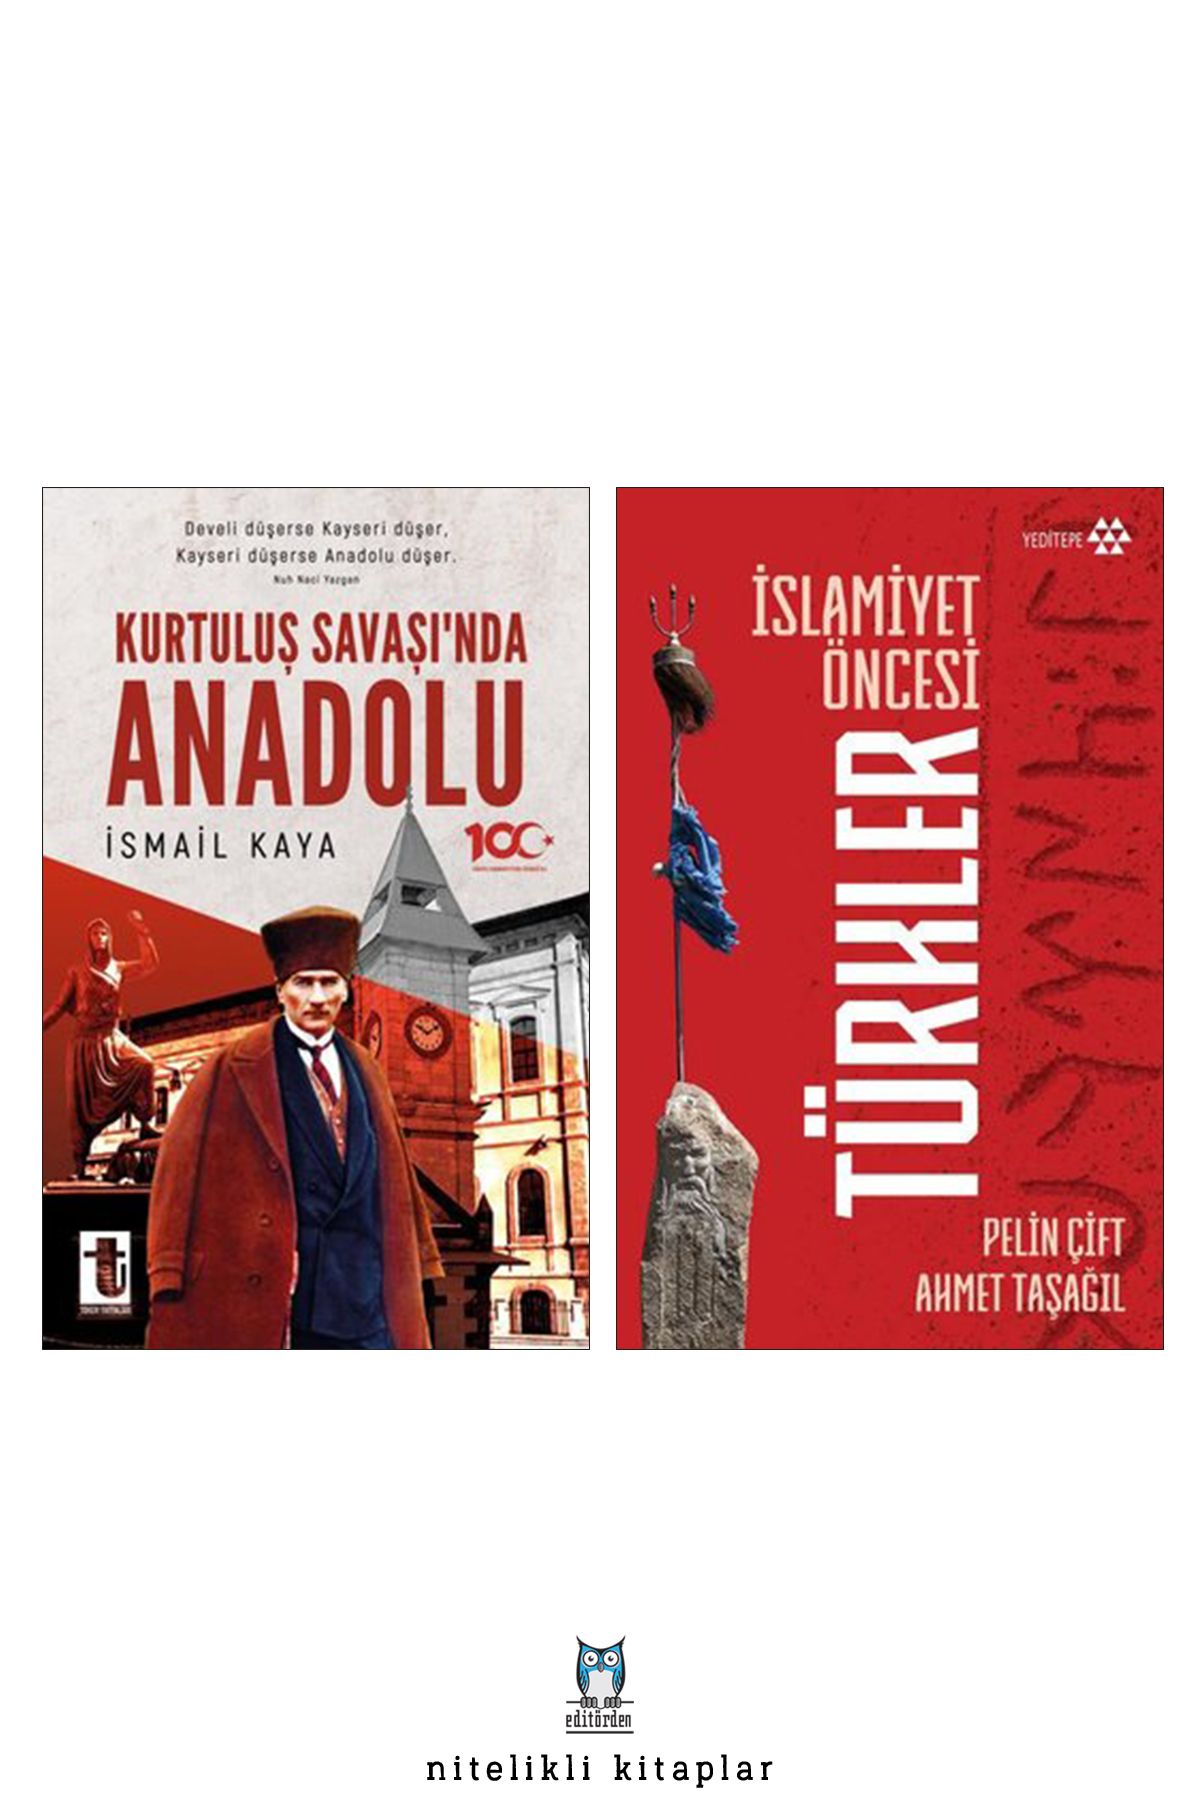 Toker Yayınları Kurtuluş Savaşı’nda Anadolu - İslamiyet Öncesi Türkler